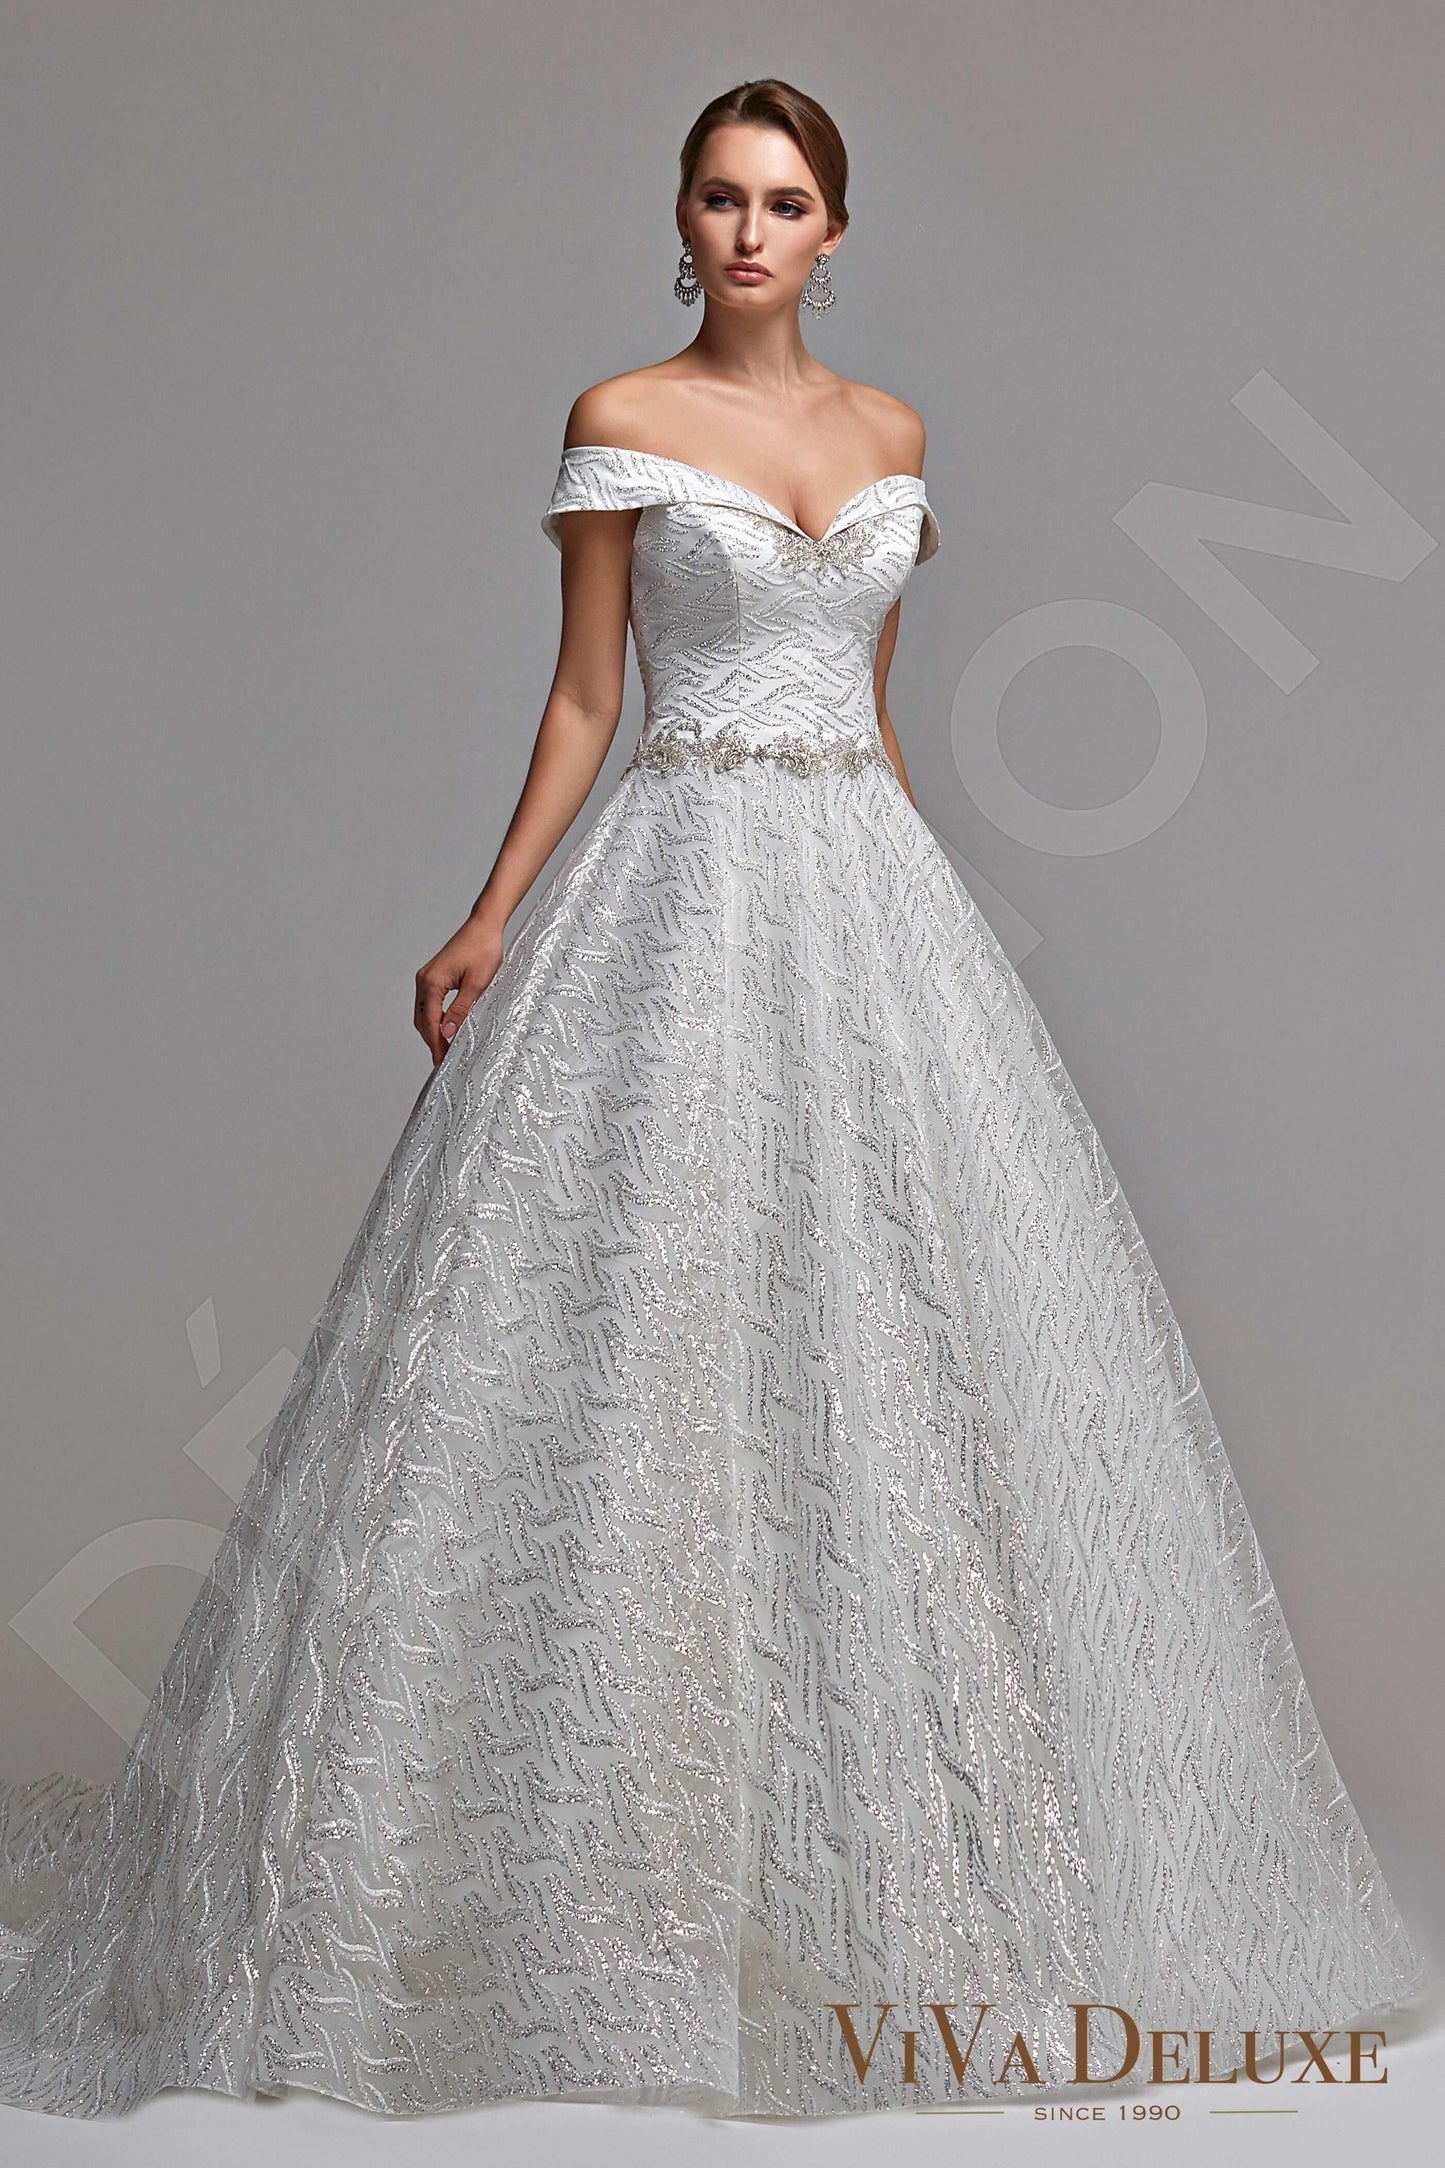 Perla Open back Princess/Ball Gown Sleeveless Wedding Dress Front